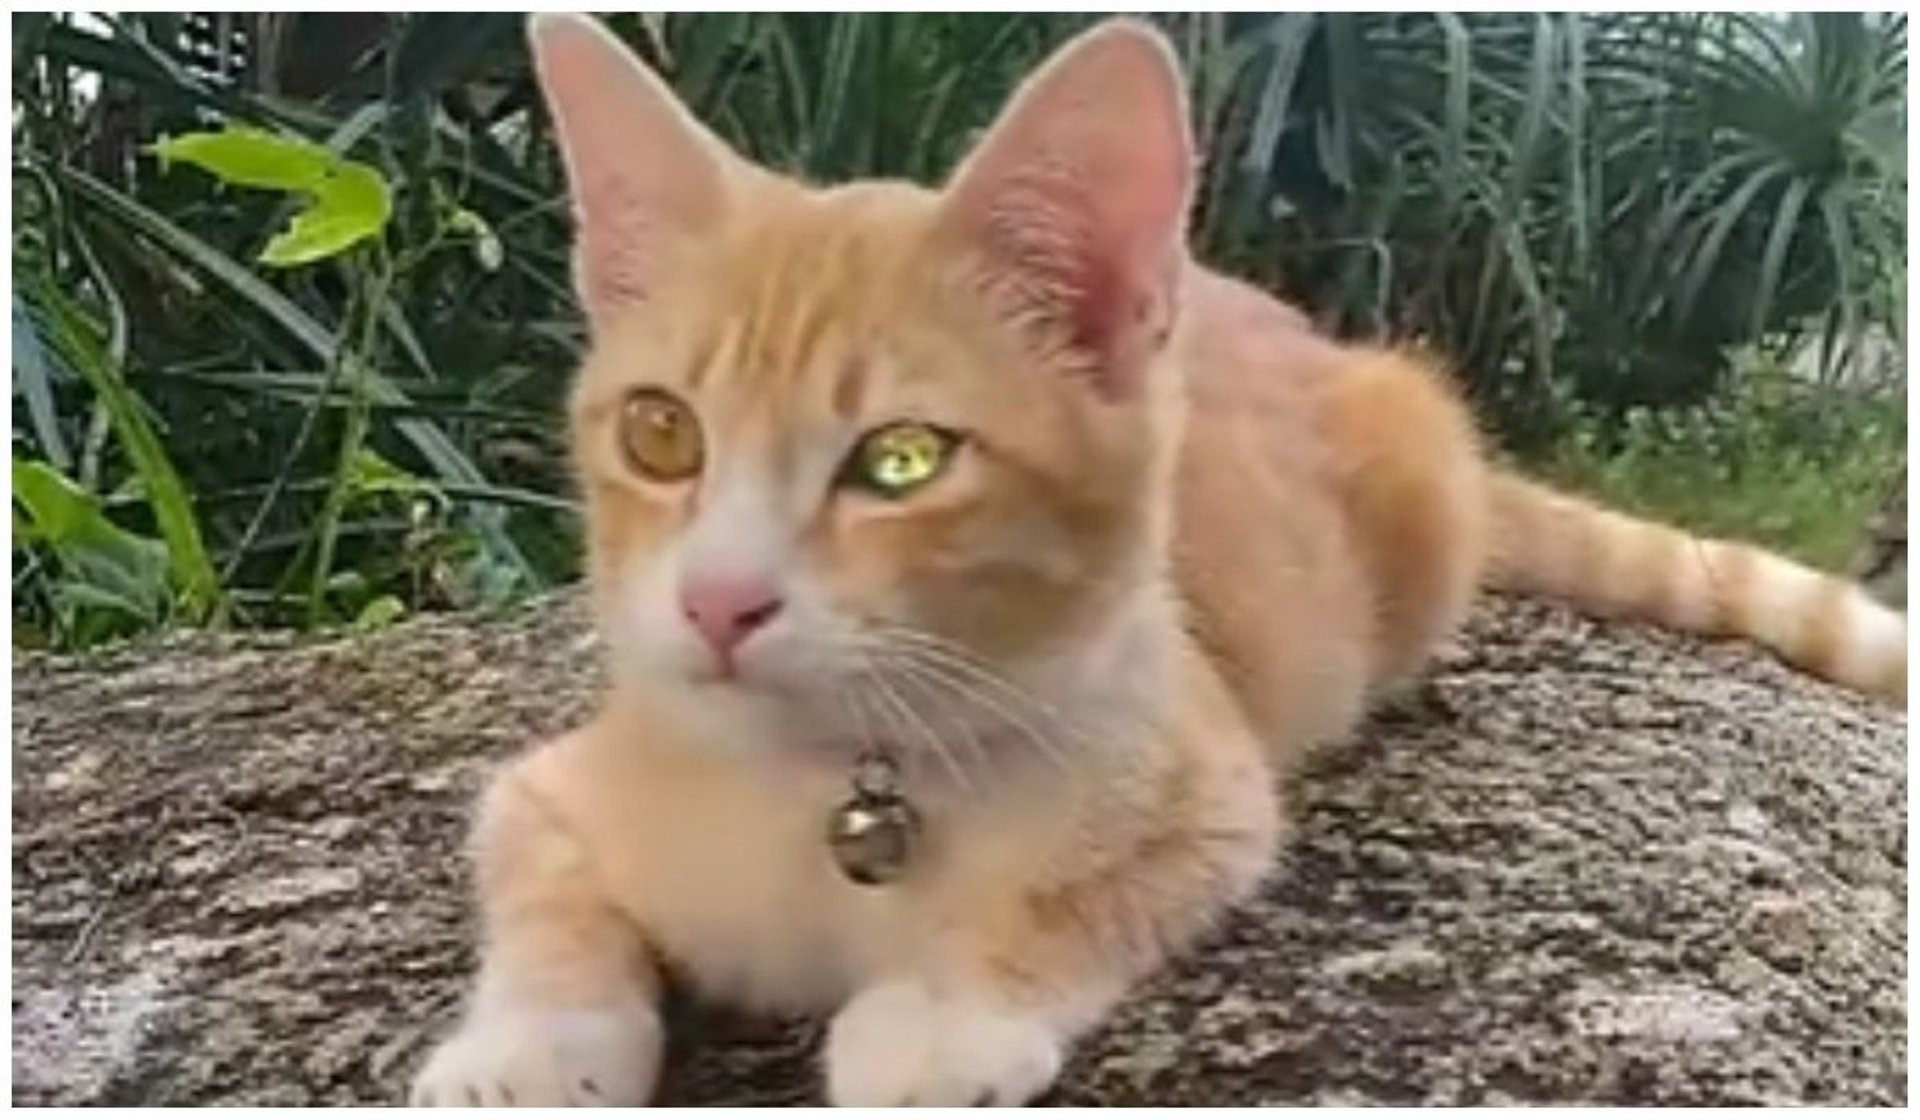 Kot o diamentowych oczach hipnotyzuje miliony internautów. Weterynarze nie widzą w nich nic piękne